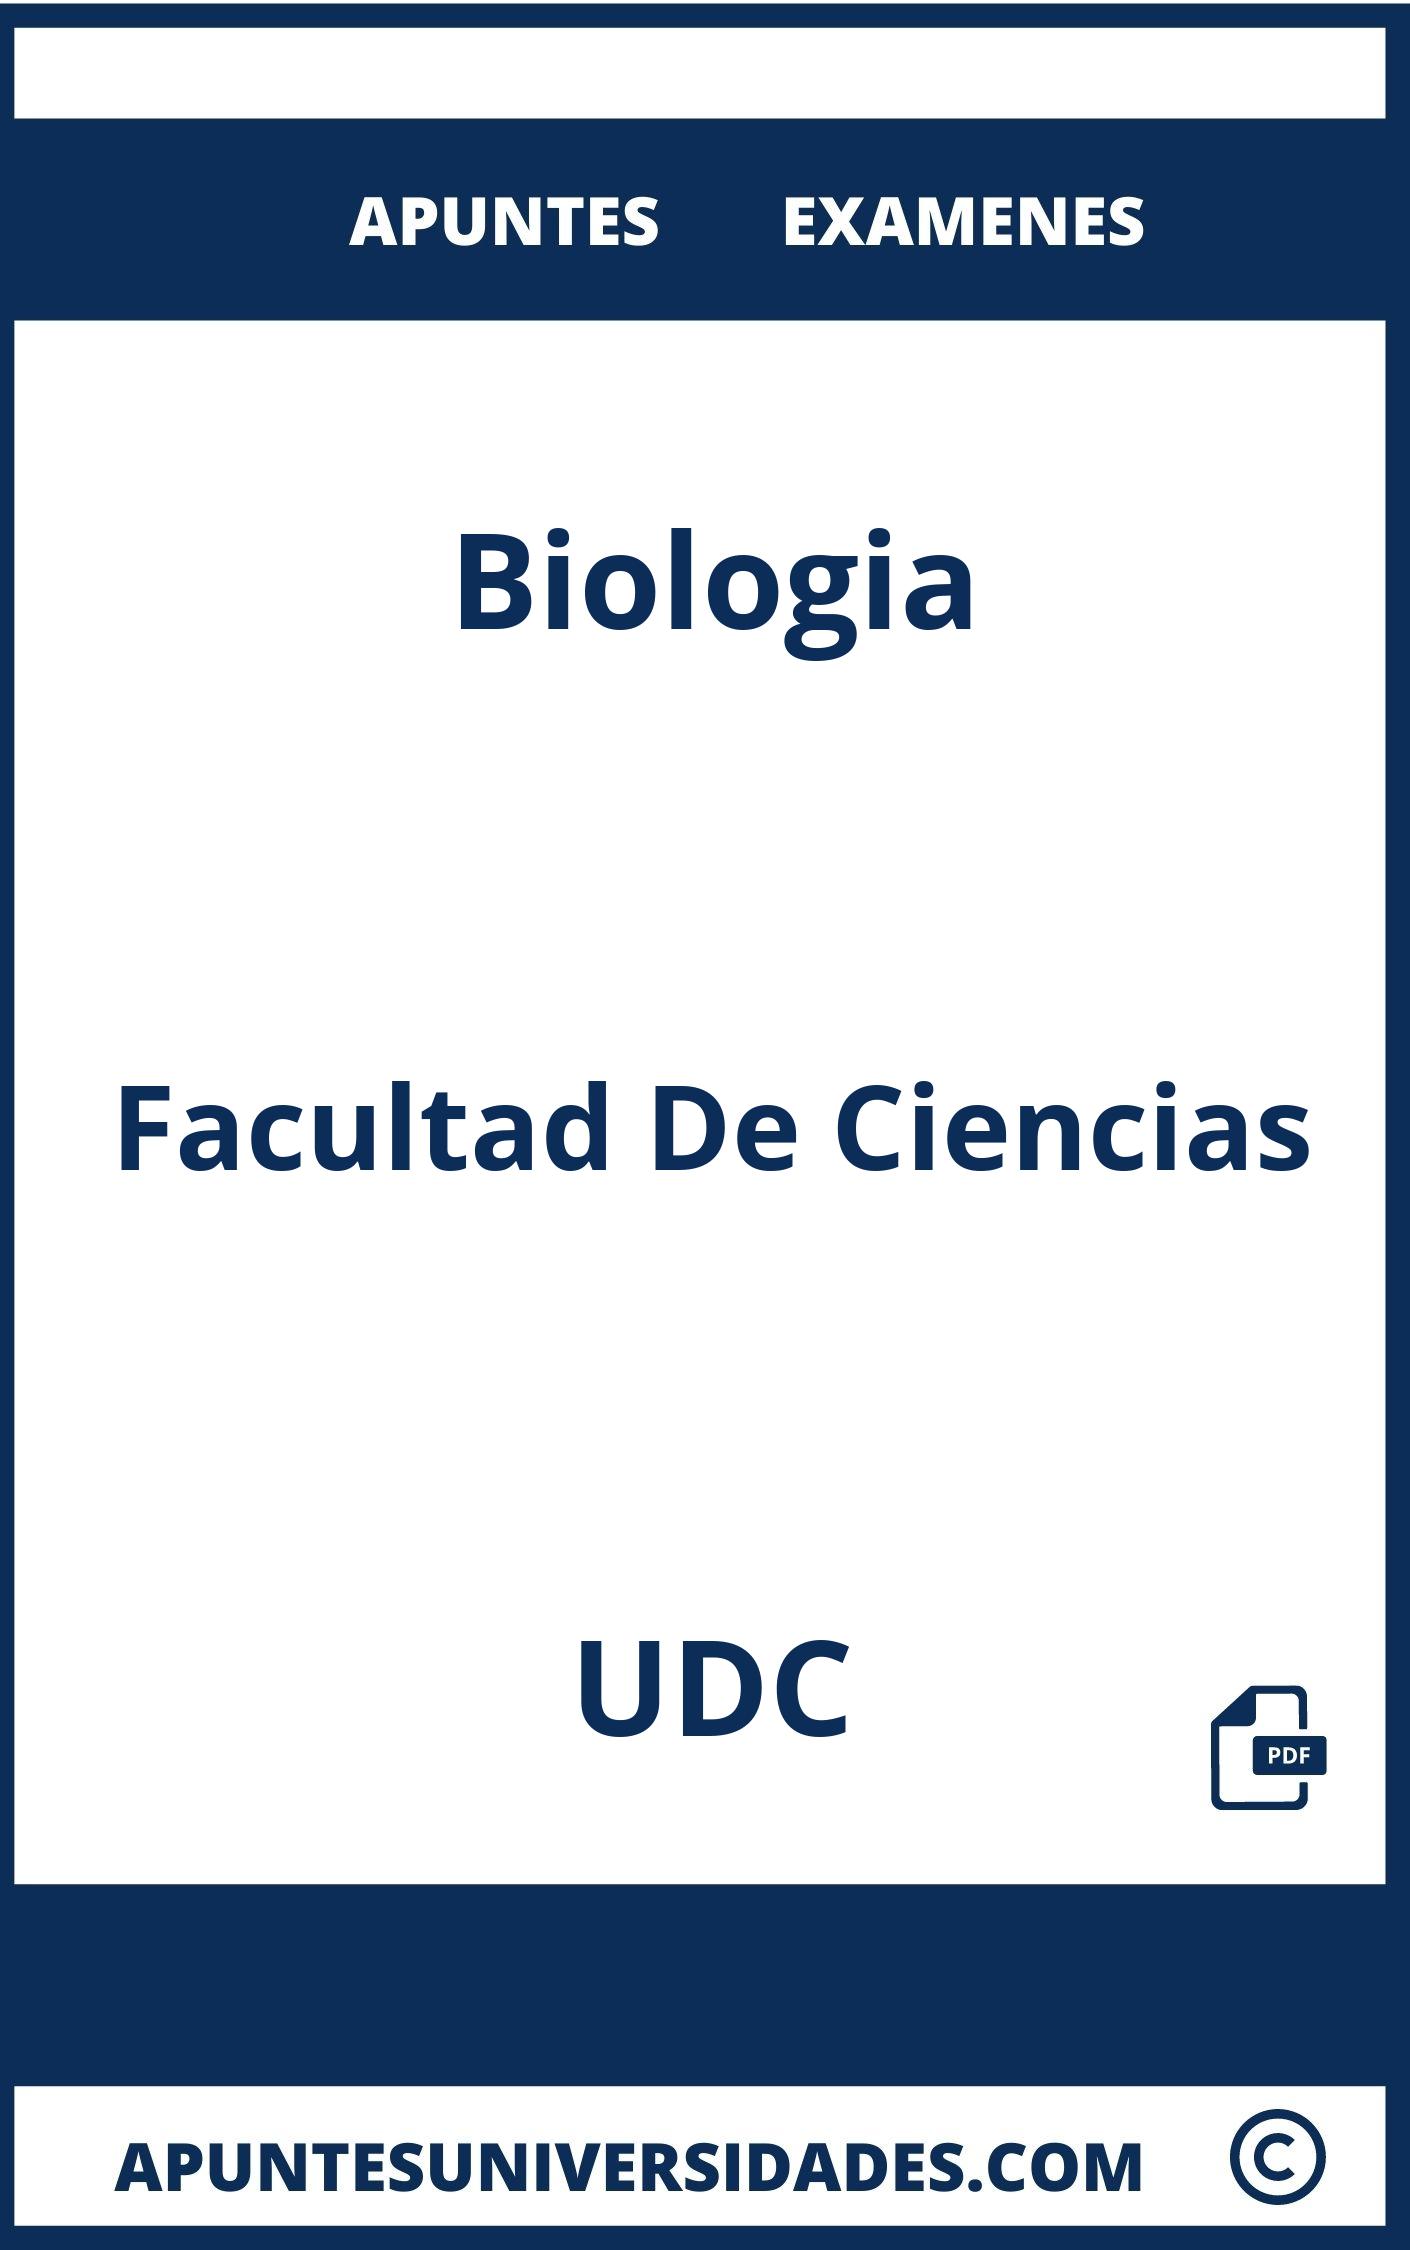 Examenes y Apuntes Biologia UDC